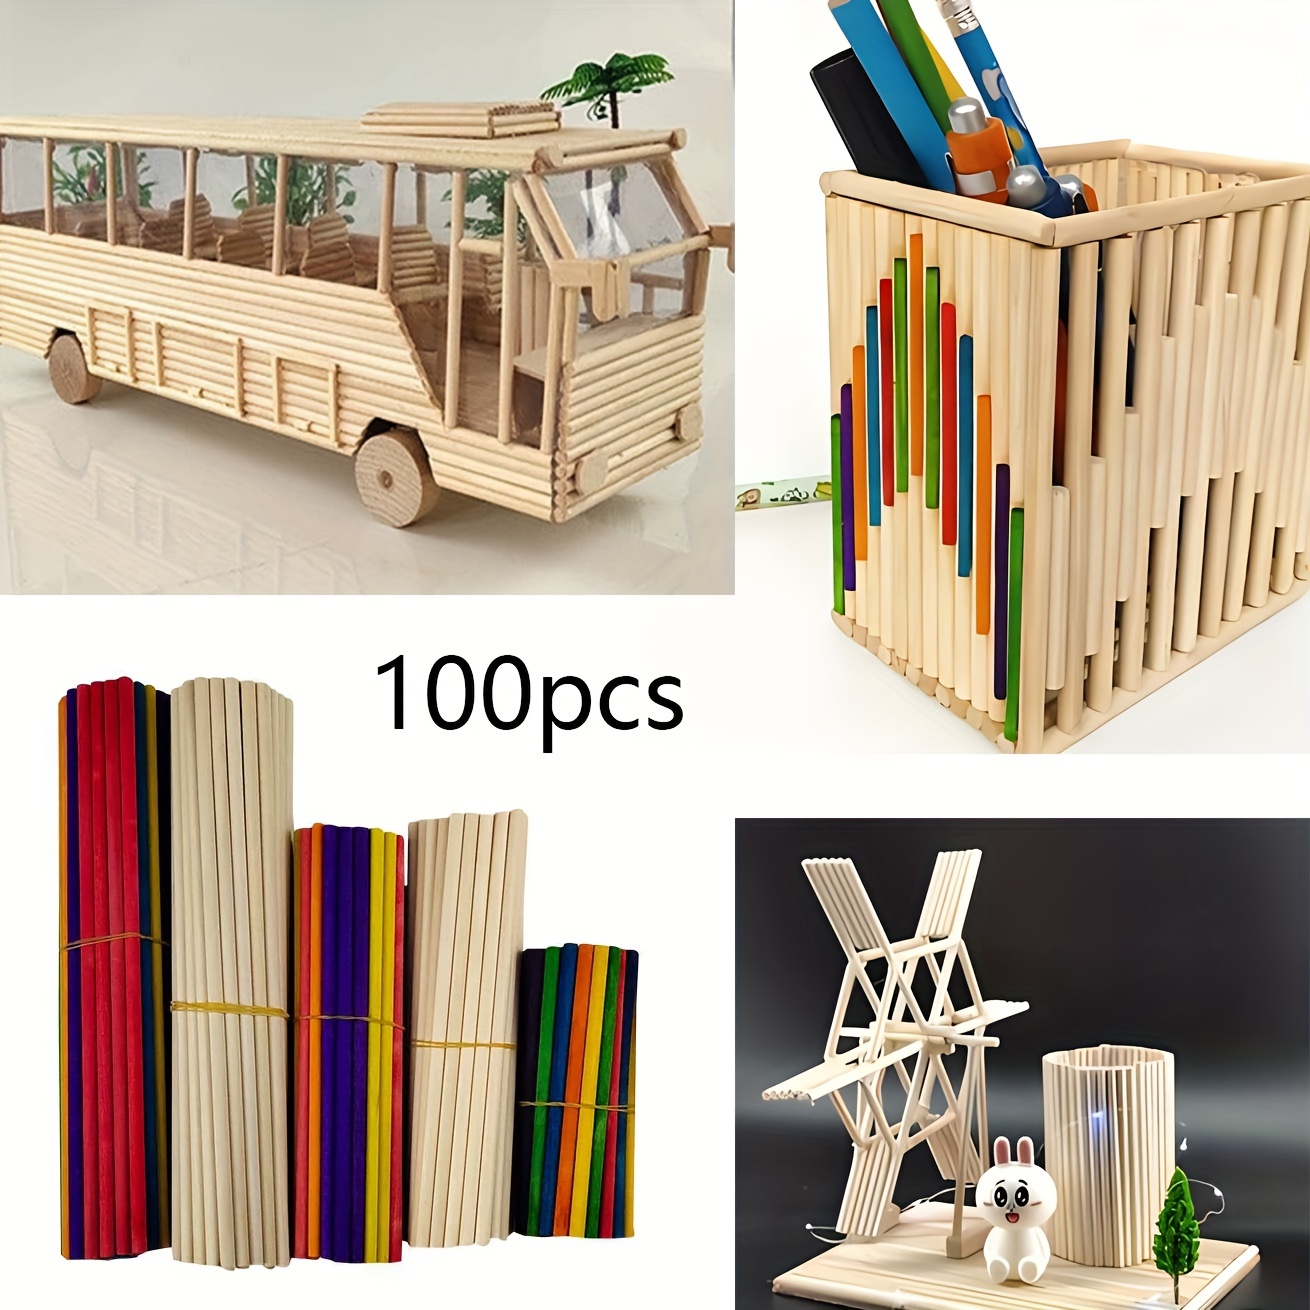 

100pcs Wooden Stick Set, Diy Crafts, Decorations, Ornaments, 25pcs*10cm+50pcs*15cm+25pcs*20cm